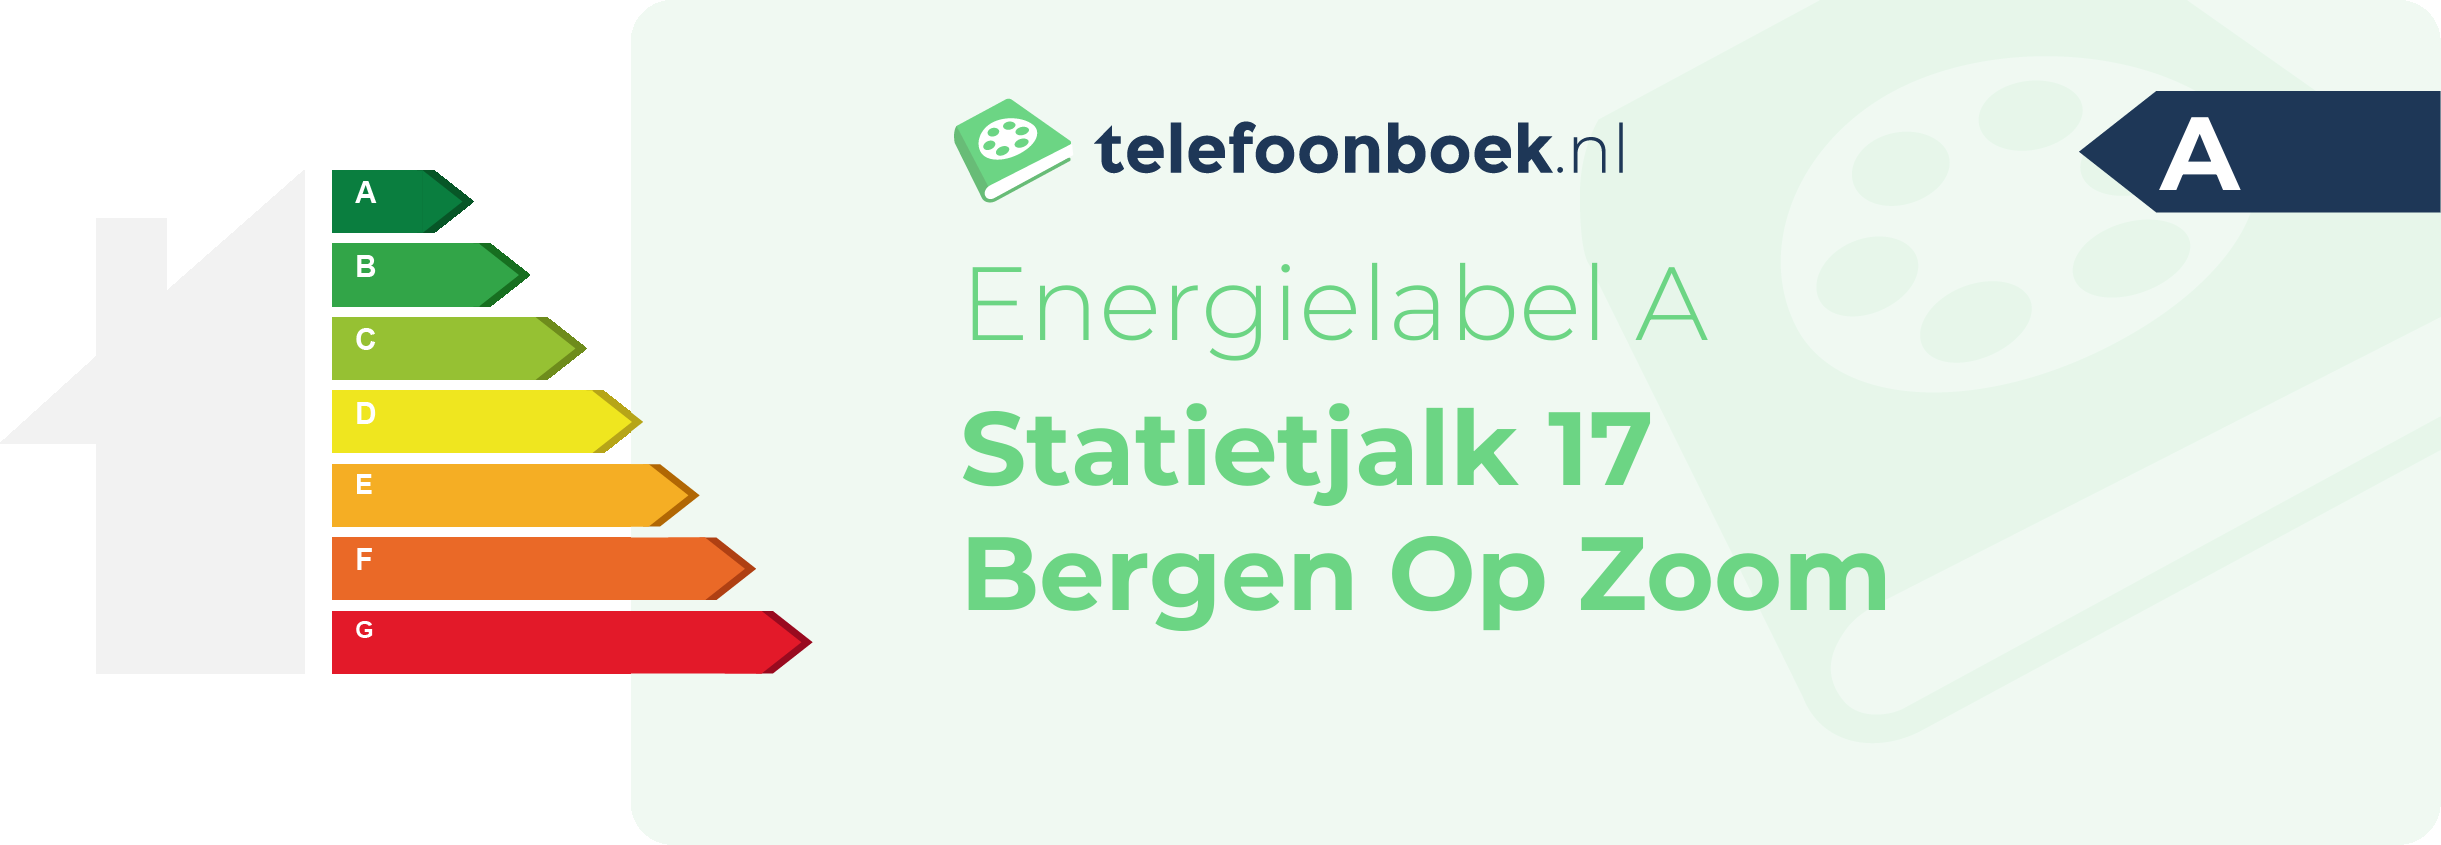 Energielabel Statietjalk 17 Bergen Op Zoom